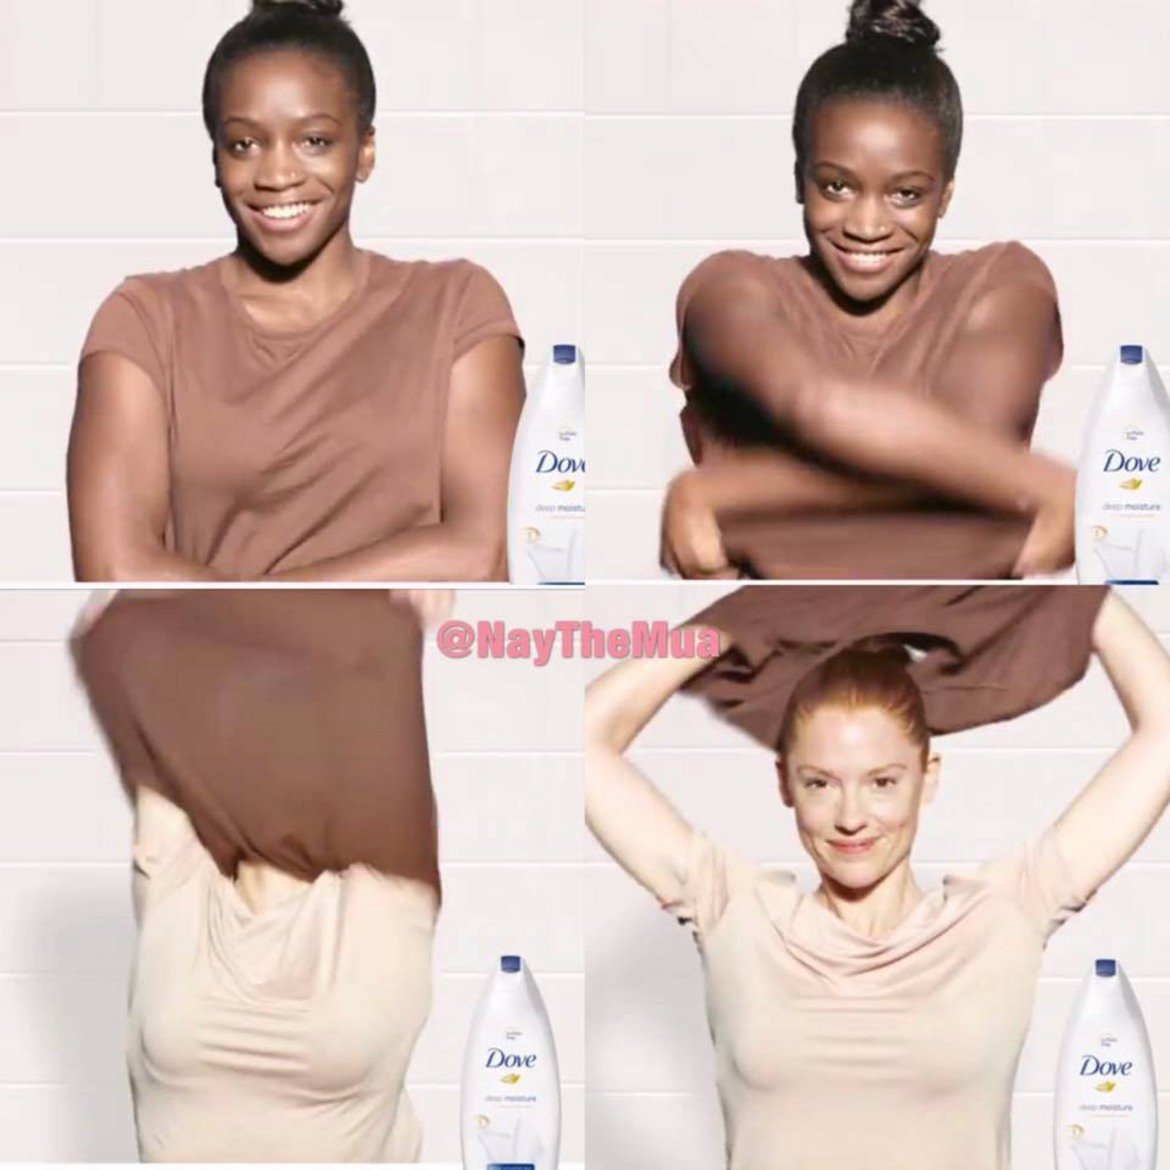 Рекламата на Dove, в която след измиване със сапун чернокожата жена става бяла, отнесе брутални критики и обвинения в расизъм.